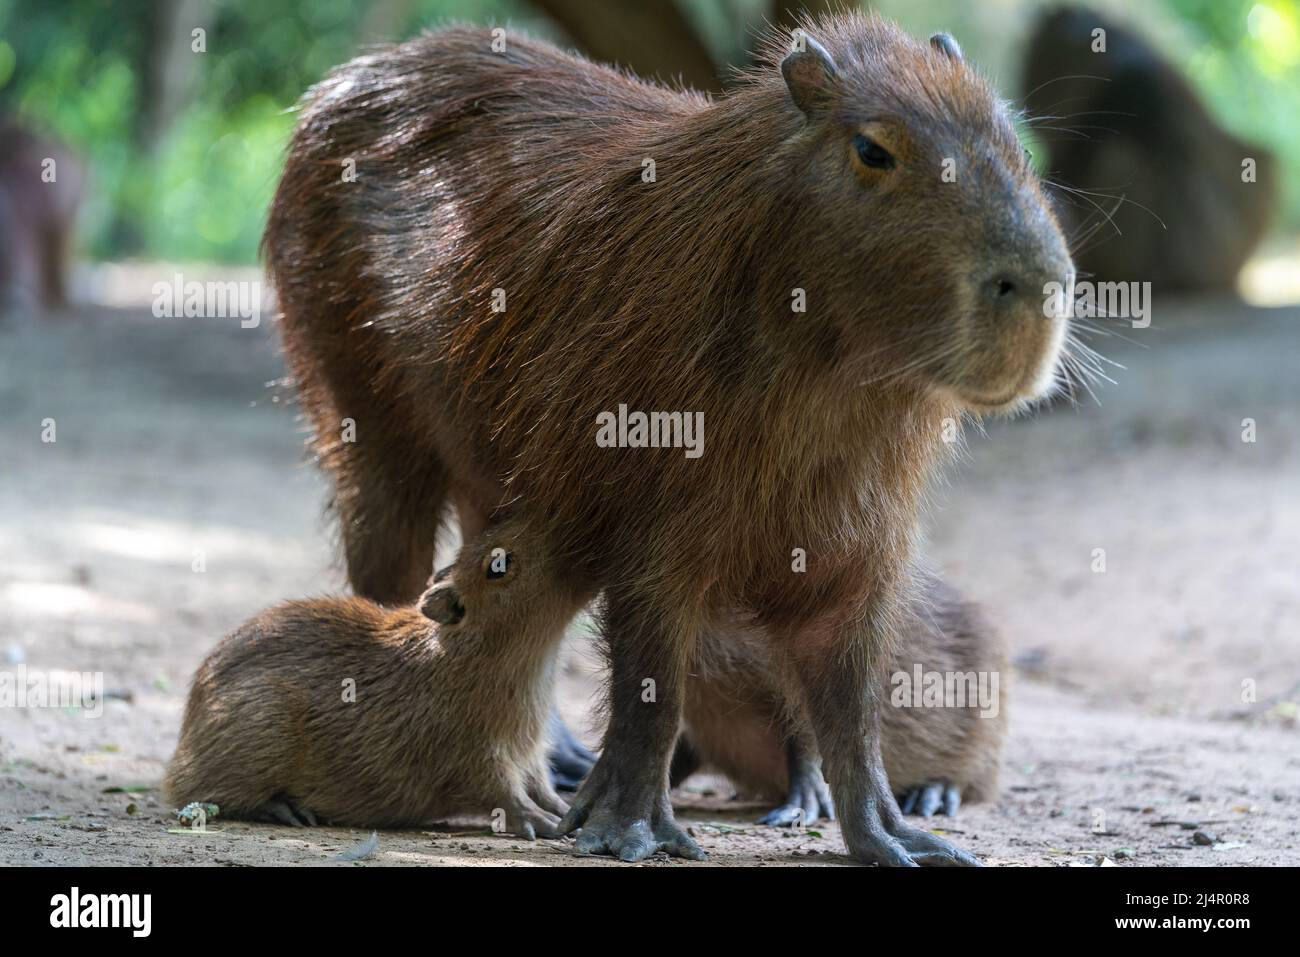 Capybara, Capybara oder „Capybara“, ein amerikanisches Nagetier in einem natürlichen Zustand, das seine Jungen stillt Stockfoto